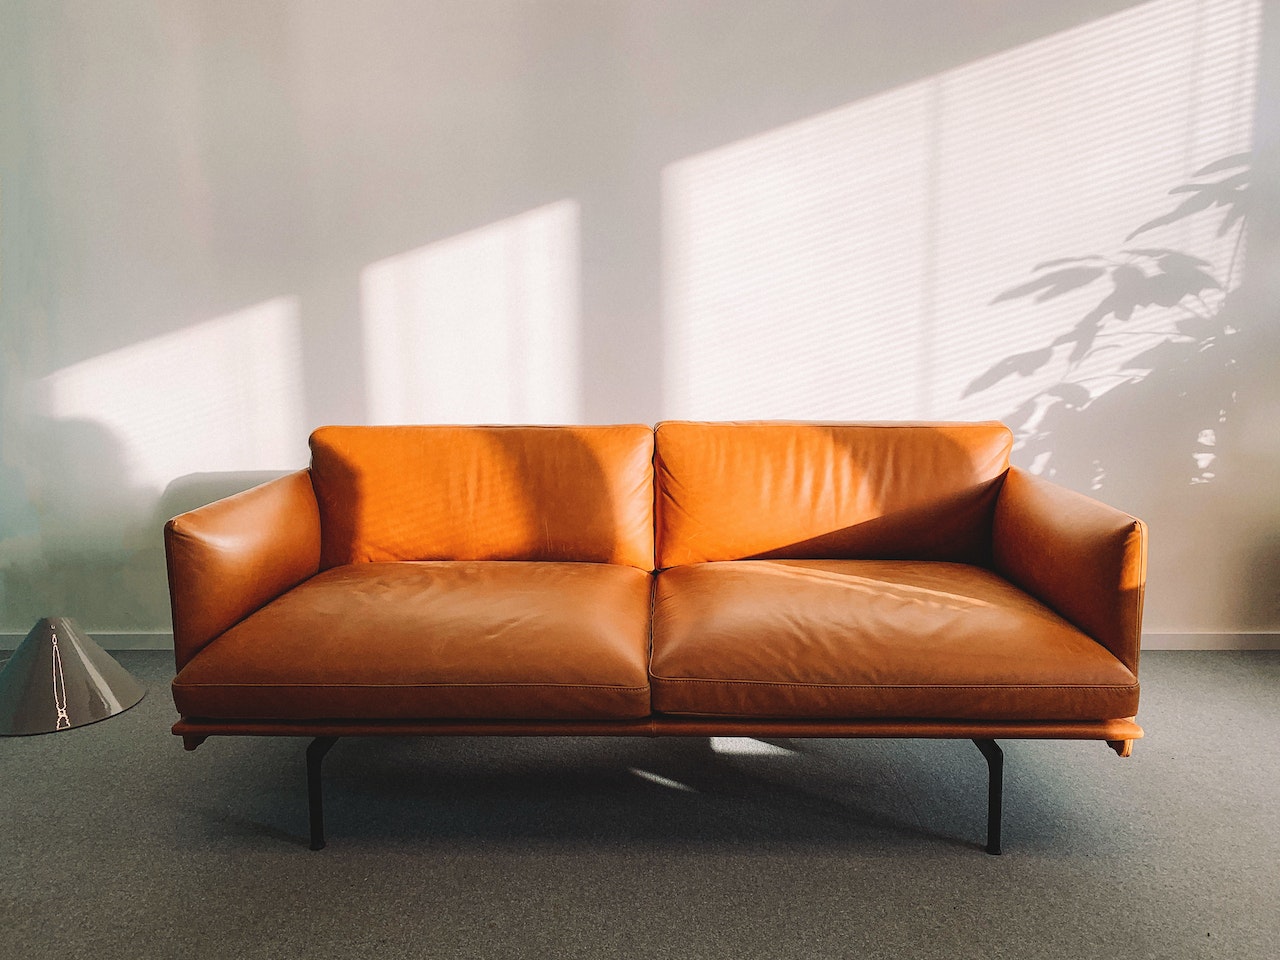 5 vantagens e 4 desvantagens do sofá de couro: leia com ATENÇÃO para decidir se ele vale a pena